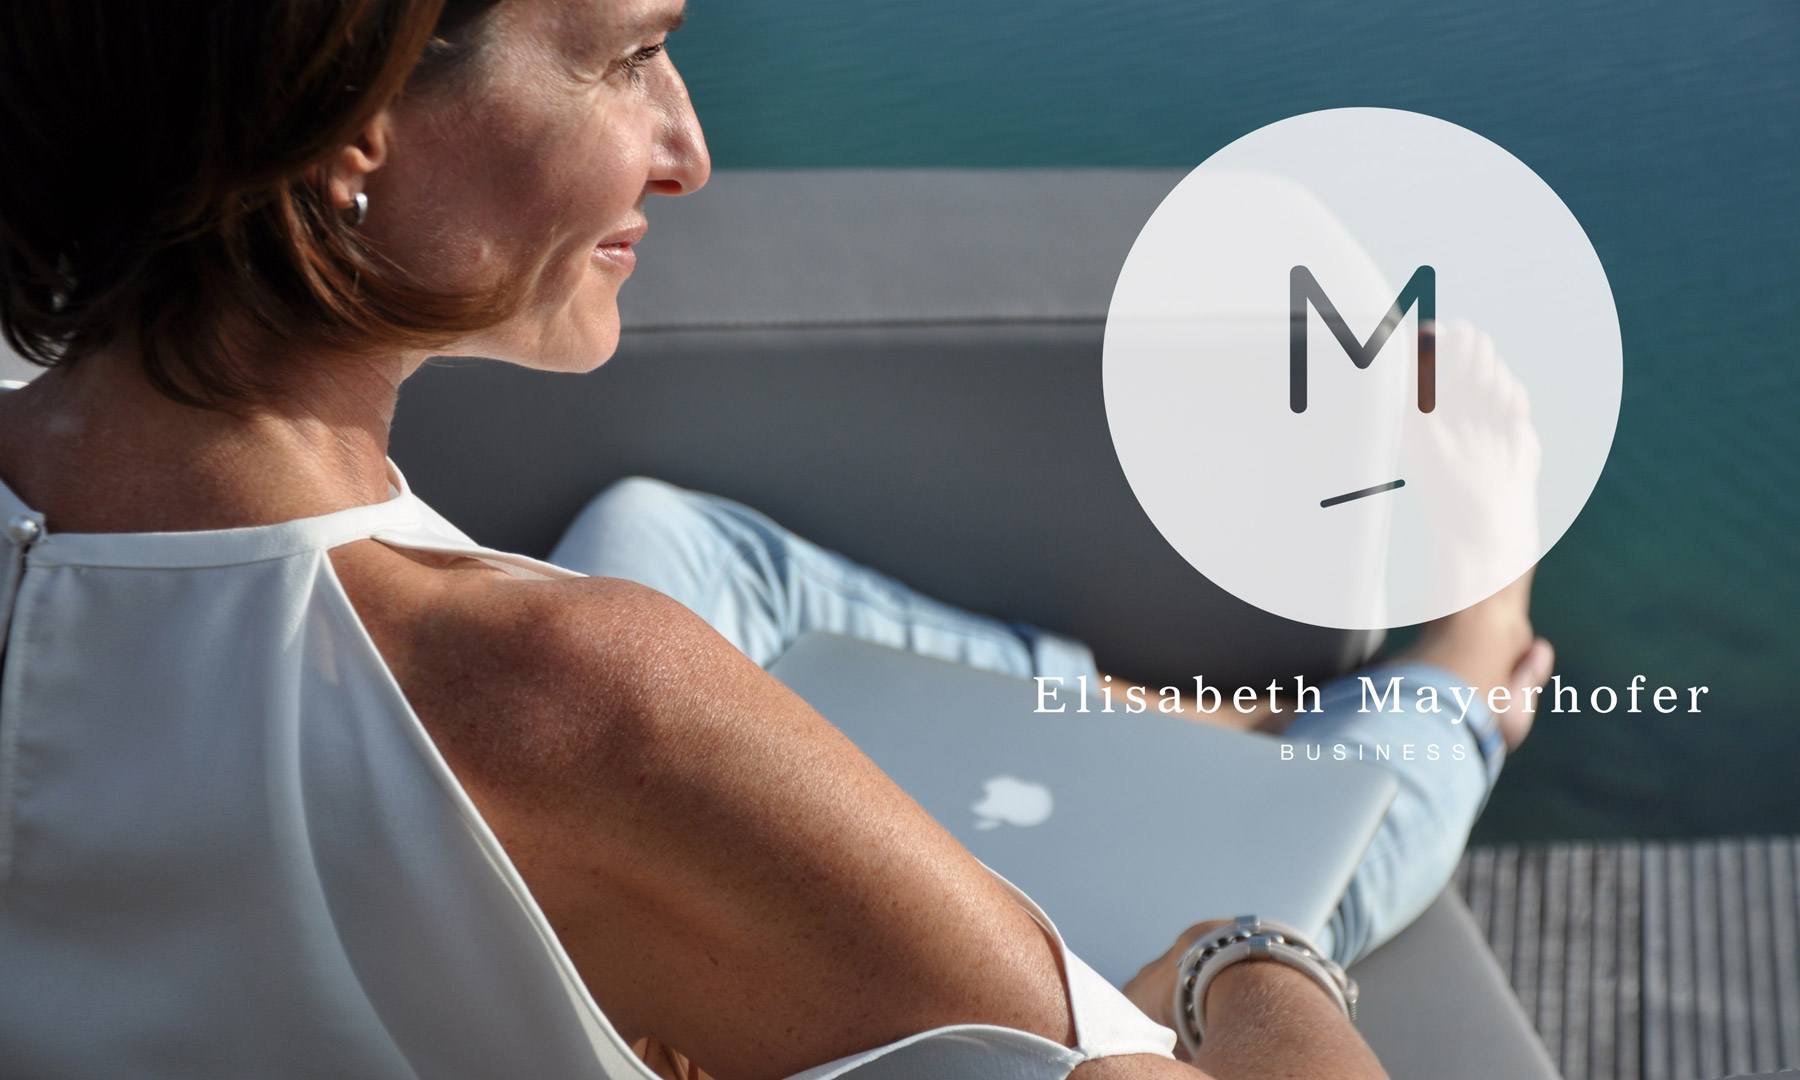 Elisabeth Mayerhofer Business Success Lifestyle